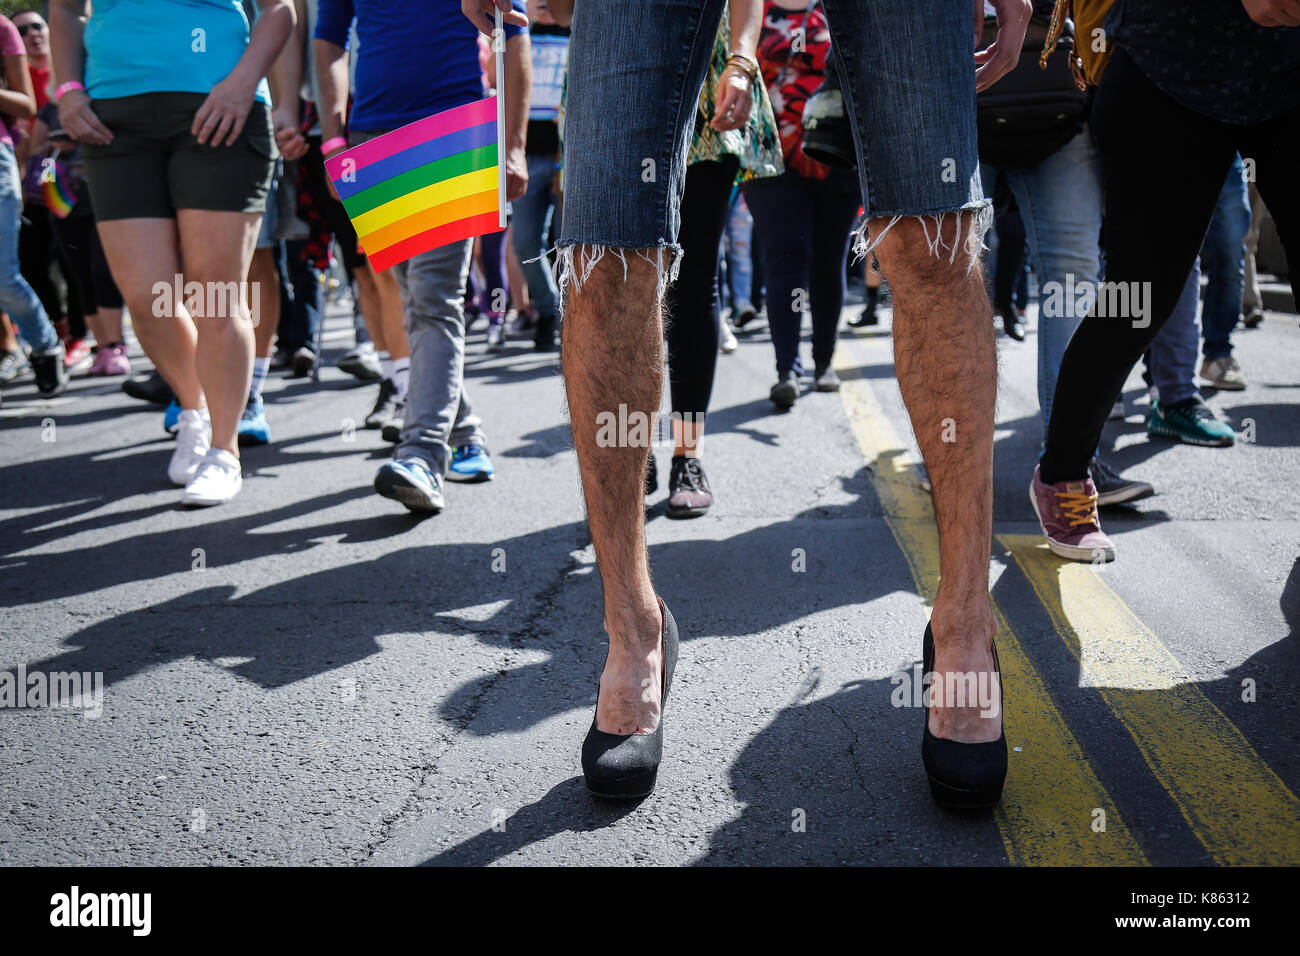 Die Teilnehmer sind während der jährliche Gay Pride in Belgrad gesehen. Gay Pride in Serbien seit 2001 gehalten, und dieses Ereignis ist der vierte in einer Reihe, geht ohne Probleme, wie eine große neue serbische Politiker einschließlich des Premierministers Ana Brnabi? Und Bürgermeister von Belgrad Siniša Mali. begann die Gay Parade und die LGBT Gemeinschaft zu unterstützen. Am 17. September 2017 in Belgrad, Serbien. Stockfoto